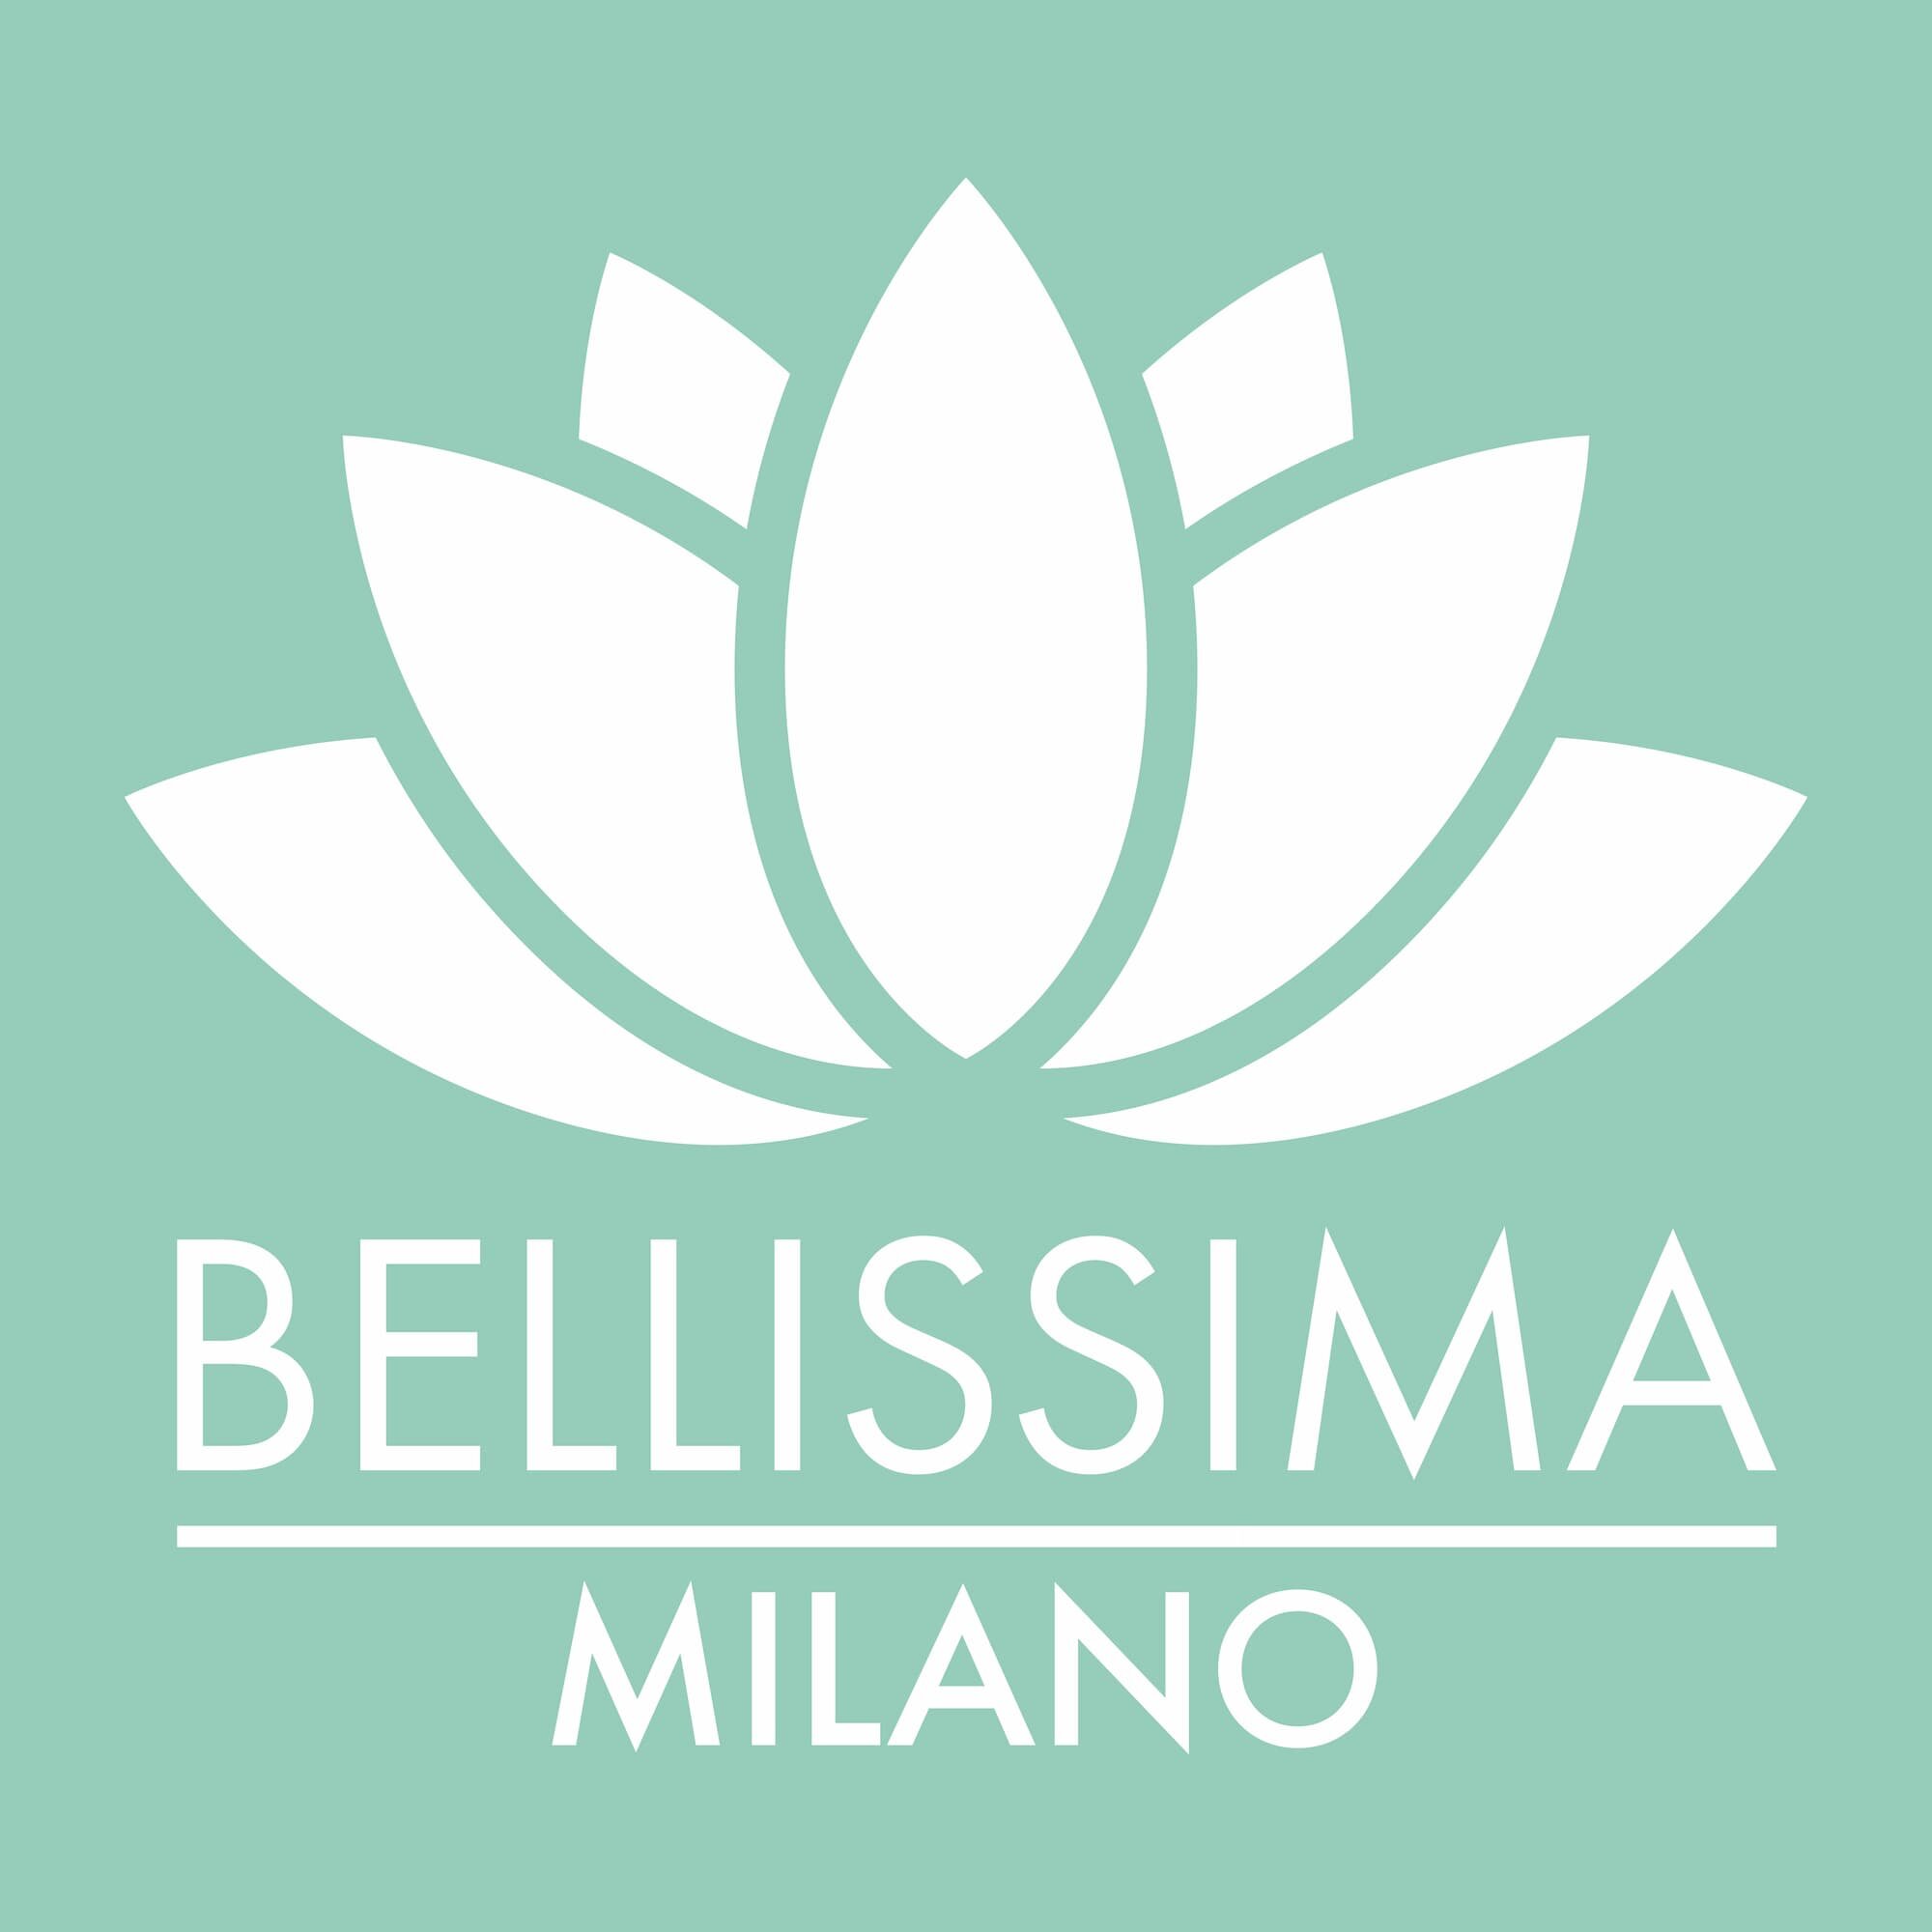 Progettazione_Logo_BellissimaMilano-04 (1).jpg